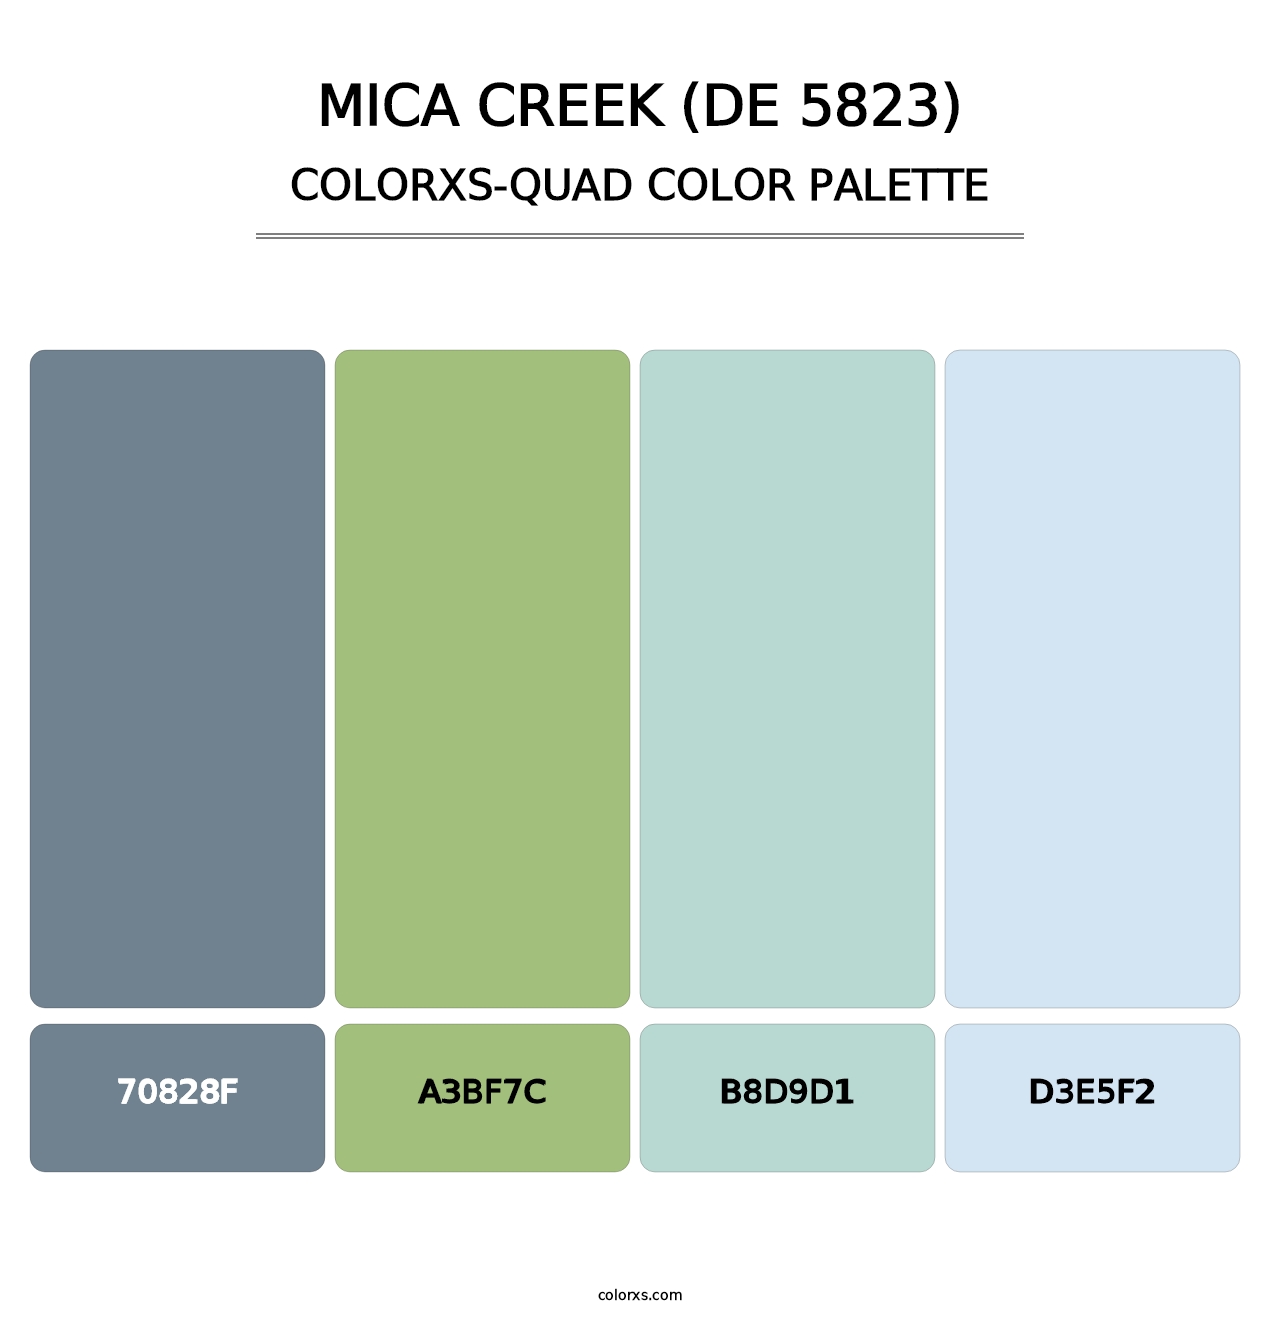 Mica Creek (DE 5823) - Colorxs Quad Palette